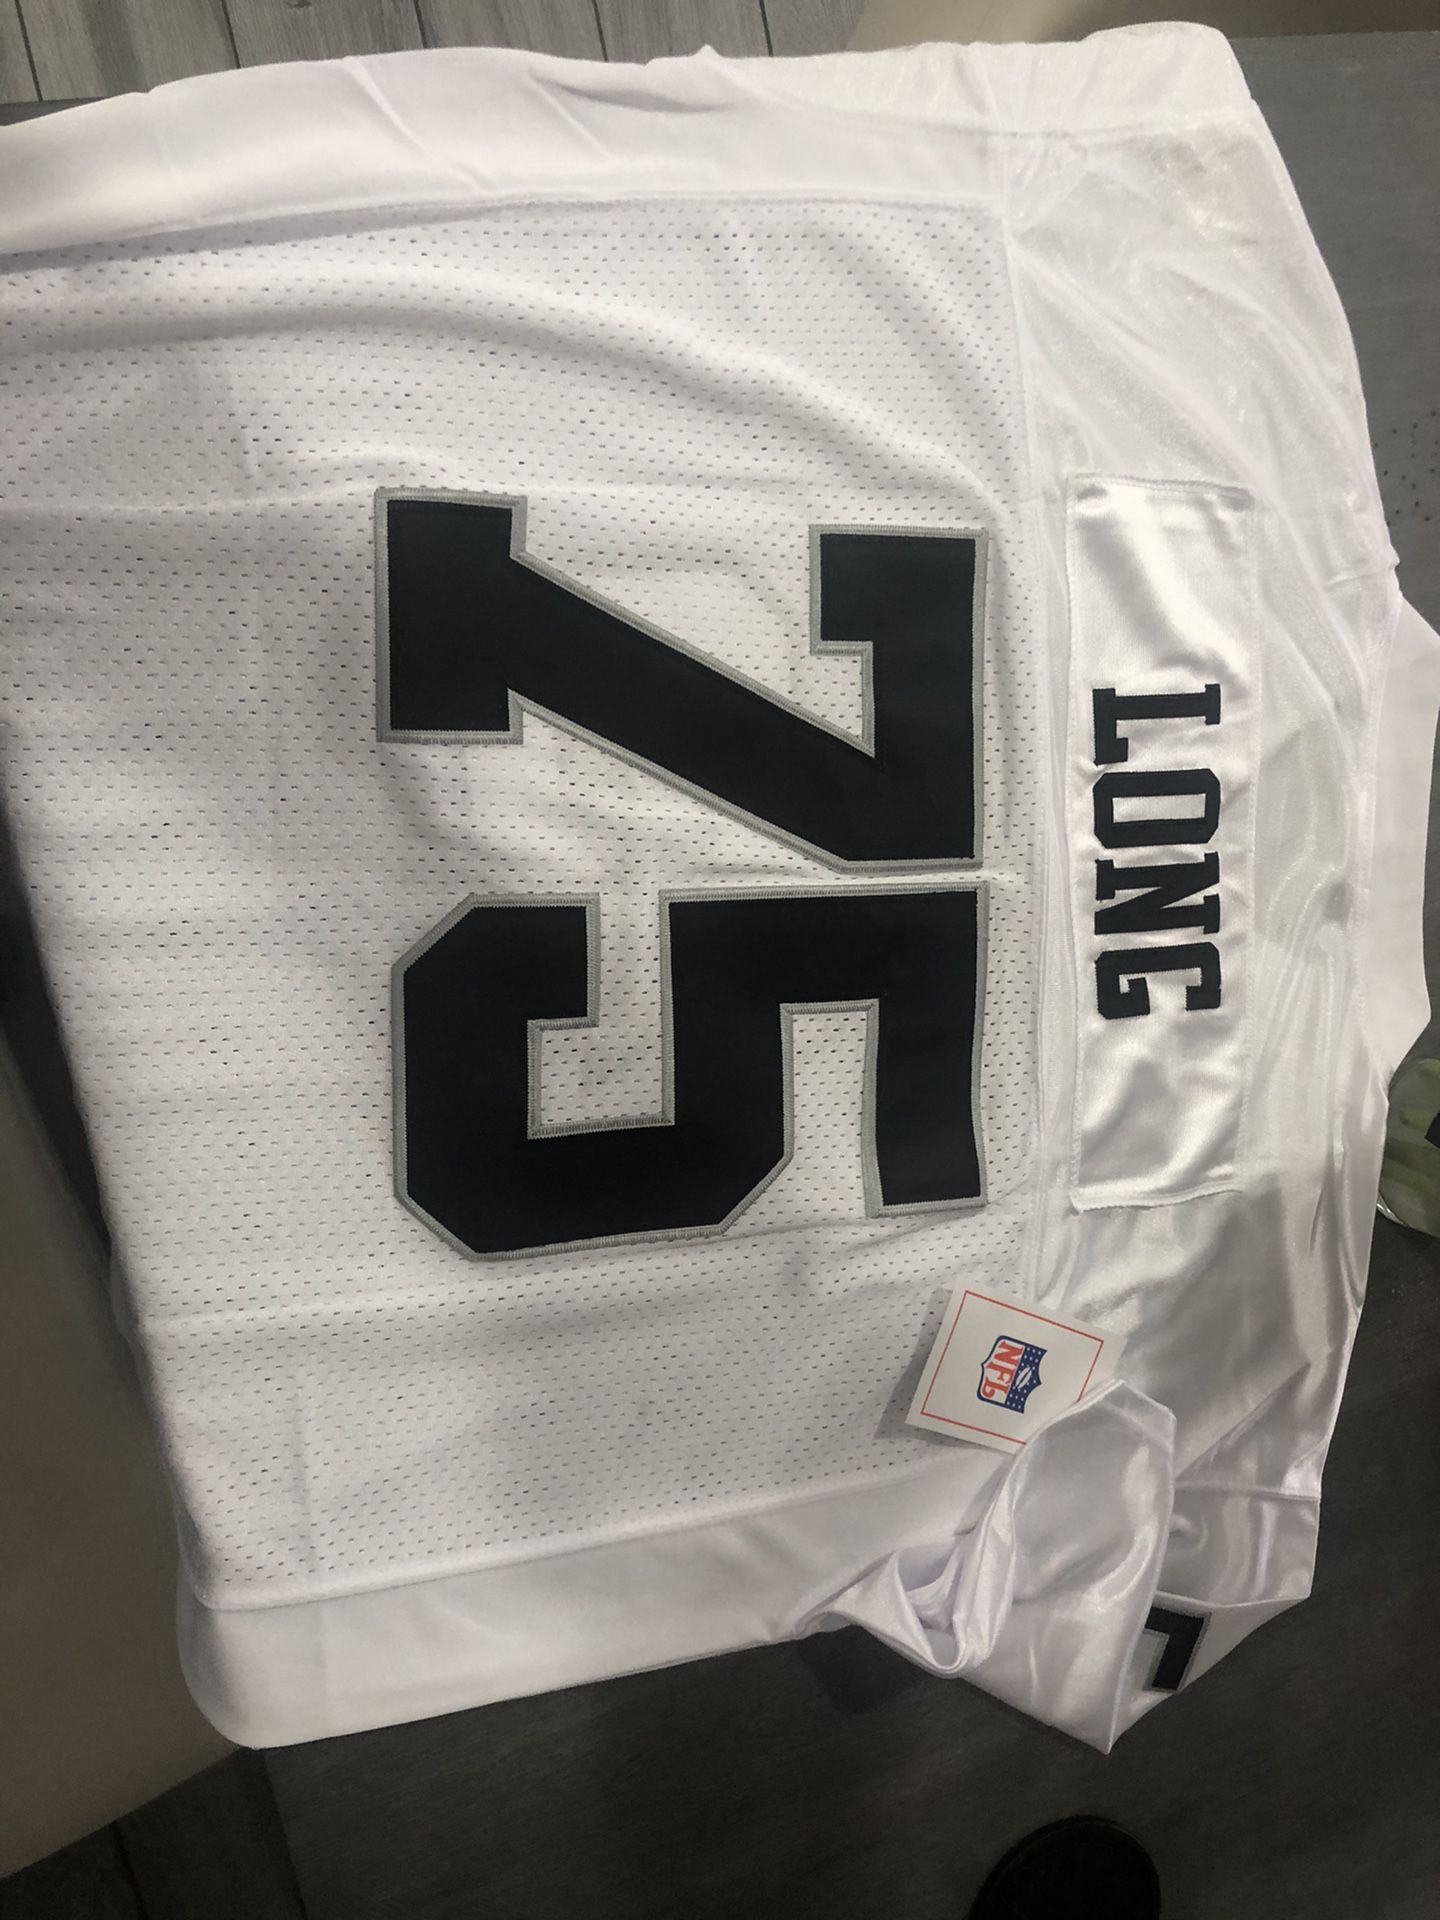 Raiders Howie Long 75 jersey XL